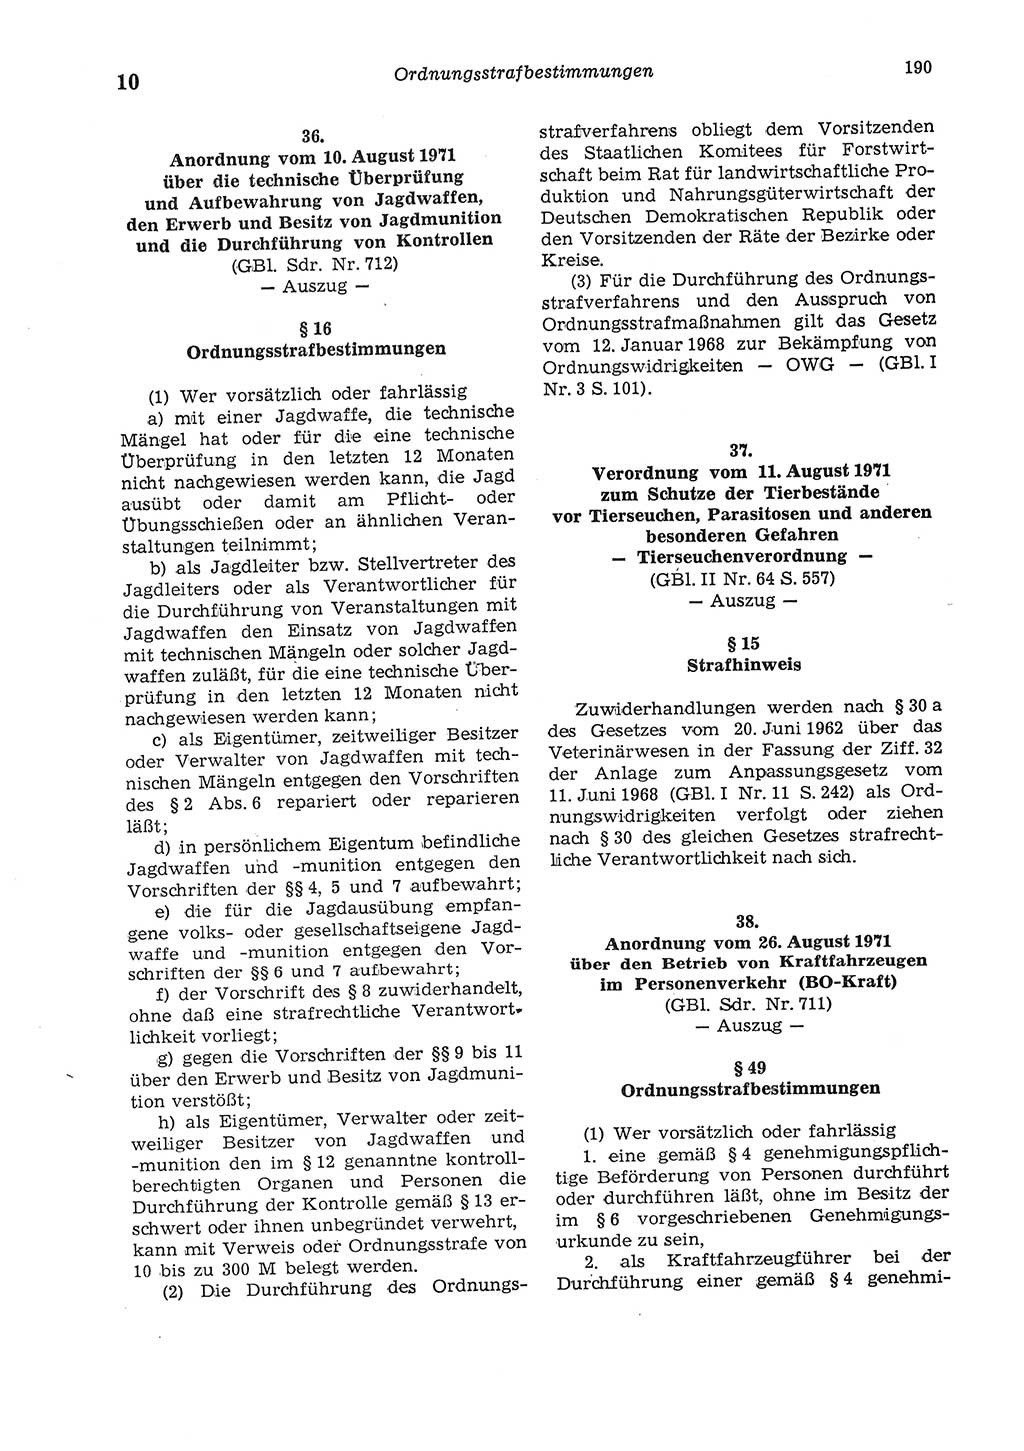 Strafgesetzbuch (StGB) der Deutschen Demokratischen Republik (DDR) und angrenzende Gesetze und Bestimmungen 1975, Seite 190 (StGB DDR Ges. Best. 1975, S. 190)